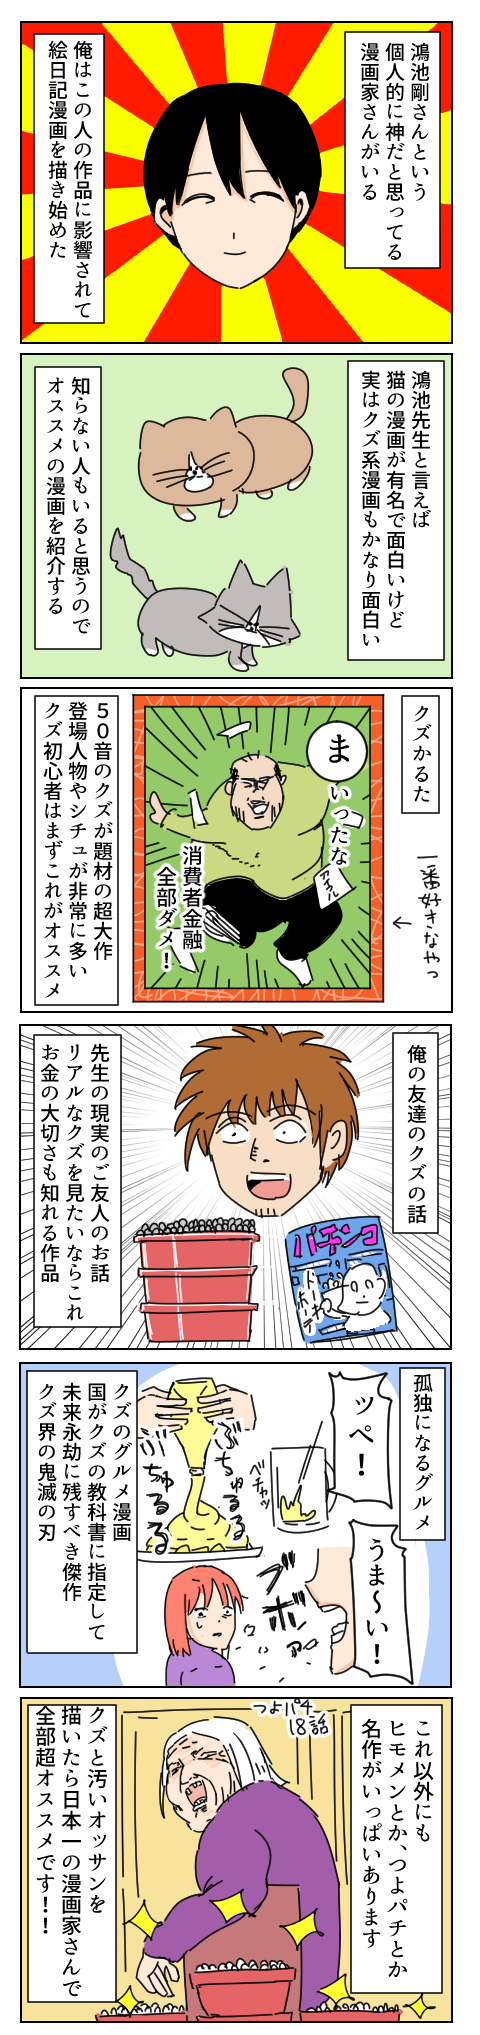 鴻池剛さんというレジェンド漫画家のオススメ漫画を語る 松居ブログ